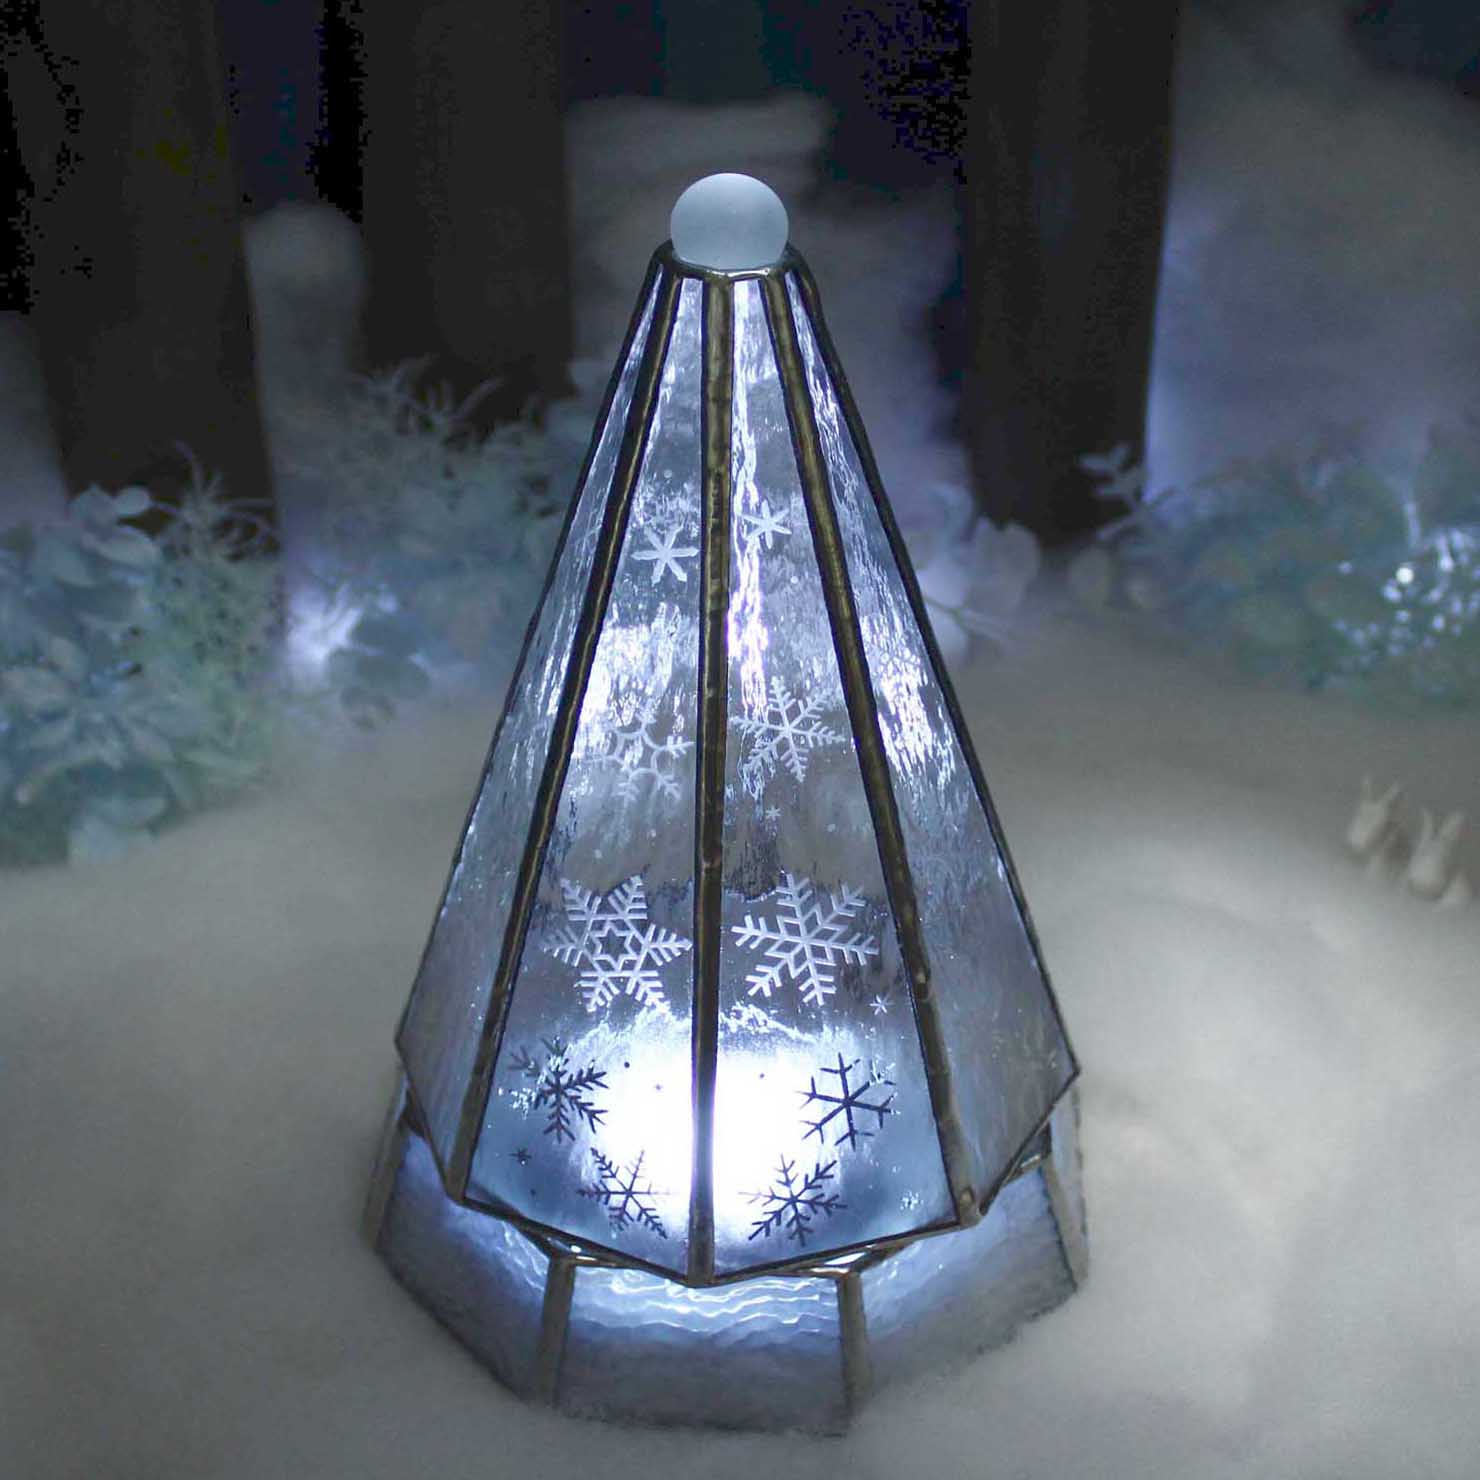 大人のクリスマスツリー 雪と氷の世界 Lサイズ ステンドグラス ランプ Ledライト付 Iichi ハンドメイド クラフト作品 手仕事品の通販